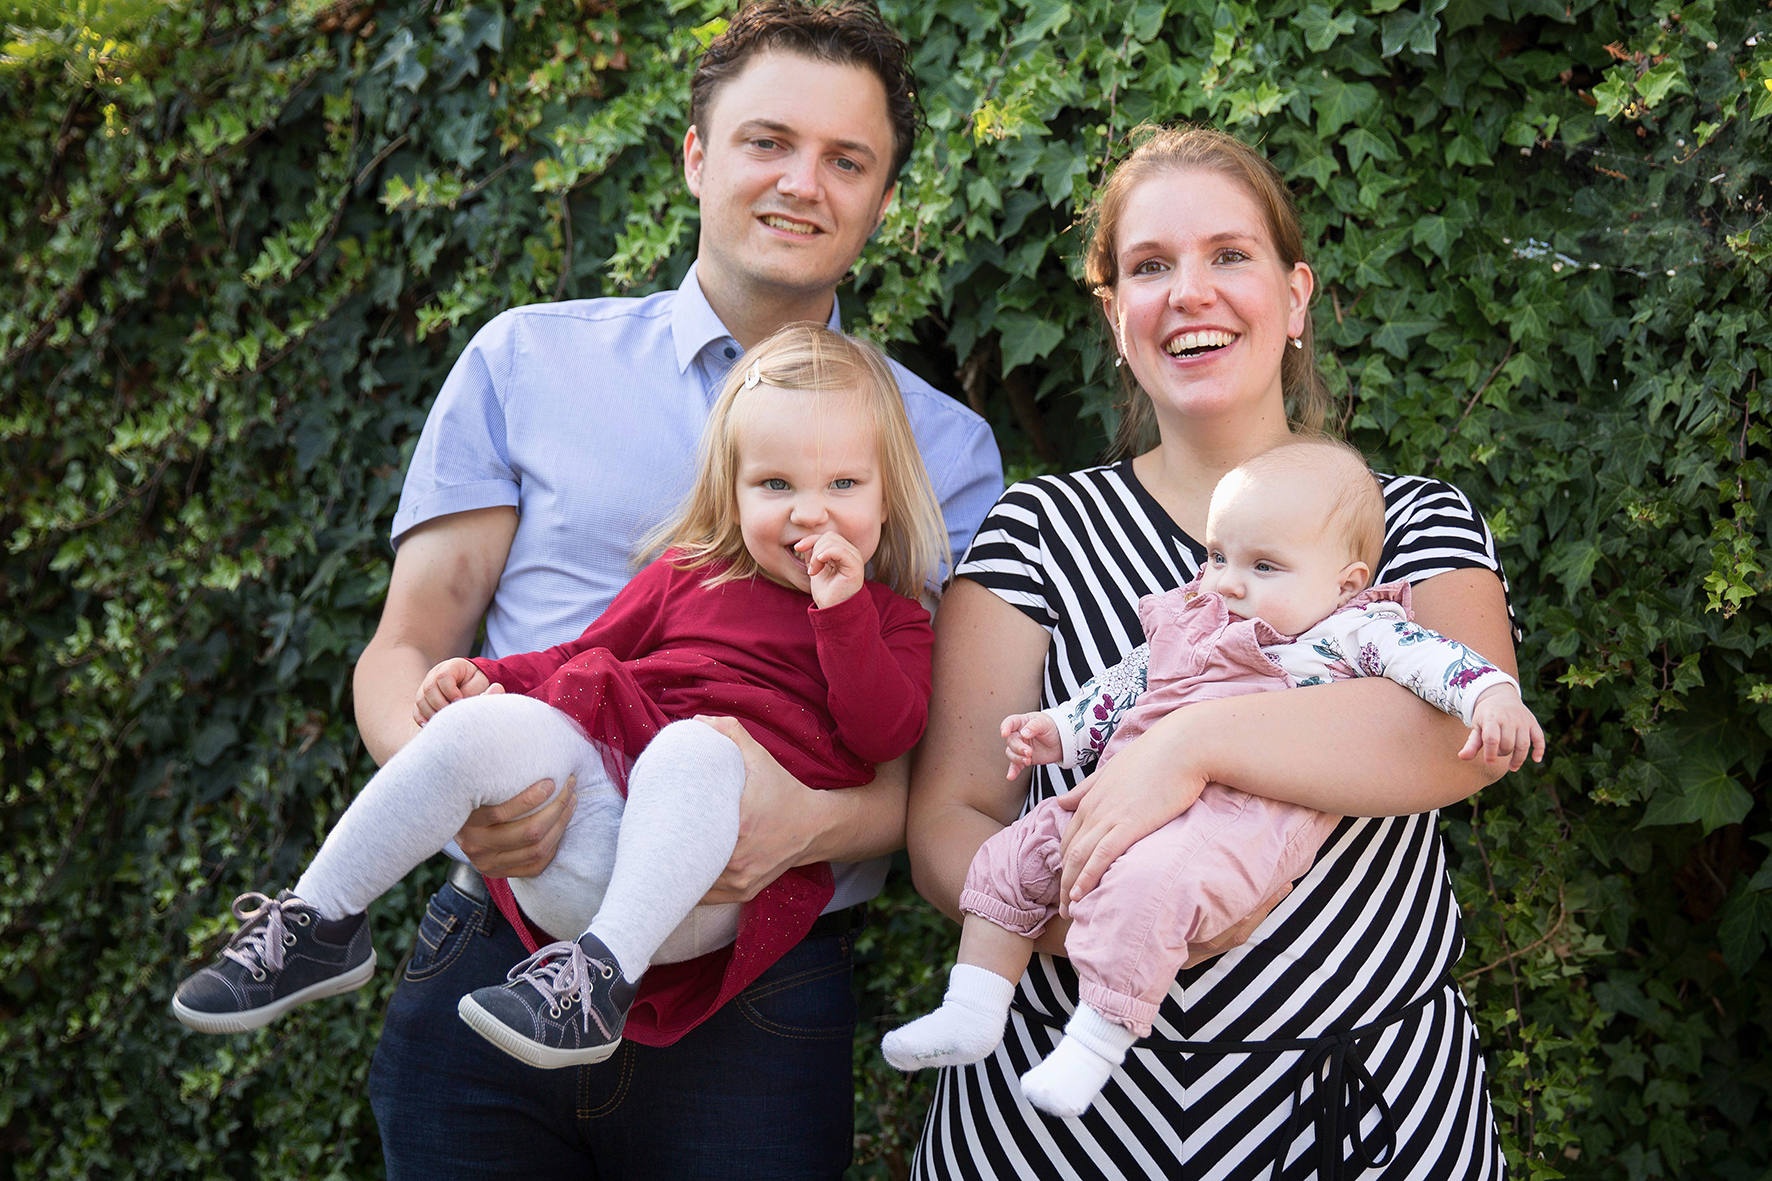 Koen en Ingrid met dochters Nina (2,5 jaar) en Merle (8 maanden). De jonge ondernemers hebben in 10 jaar al heel wat veranderingen meegemaakt op hun bedrijf. 